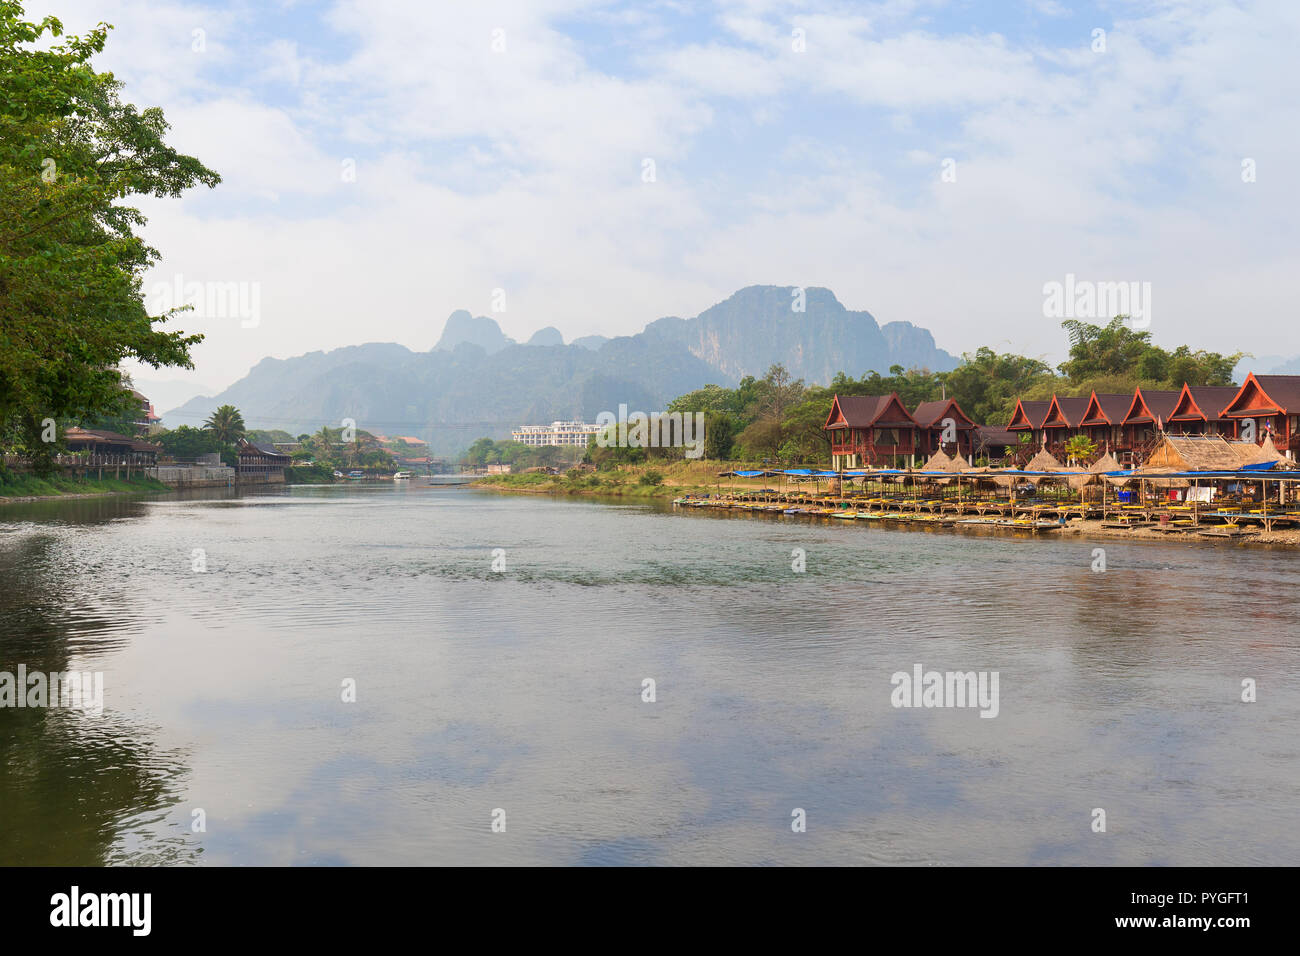 Nam Song River e Waterfront Restaurant, bungalow ed edifici in Vang Vieng, Provincia di Vientiane, Laos, in una giornata di sole. Foto Stock